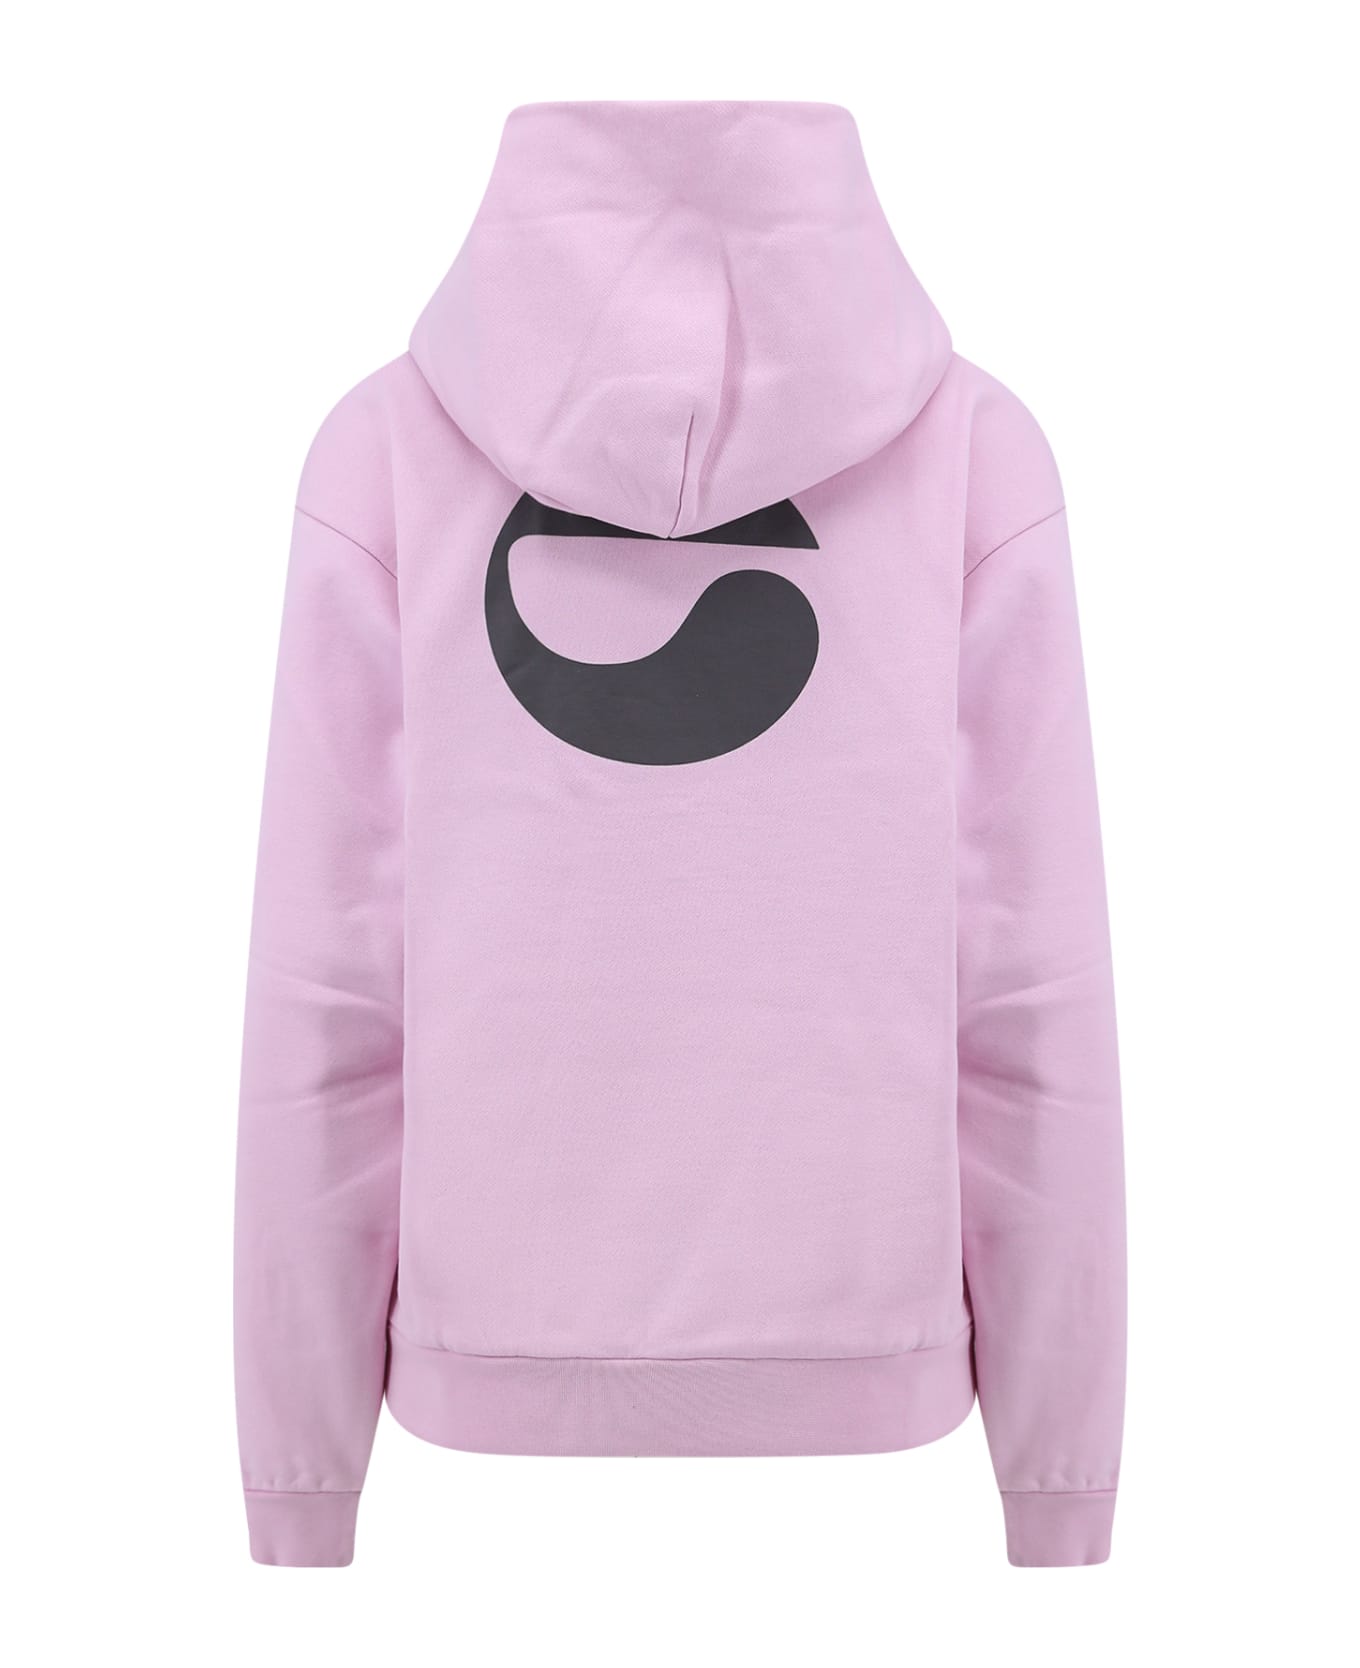 Coperni Sweatshirt - Pink フリース